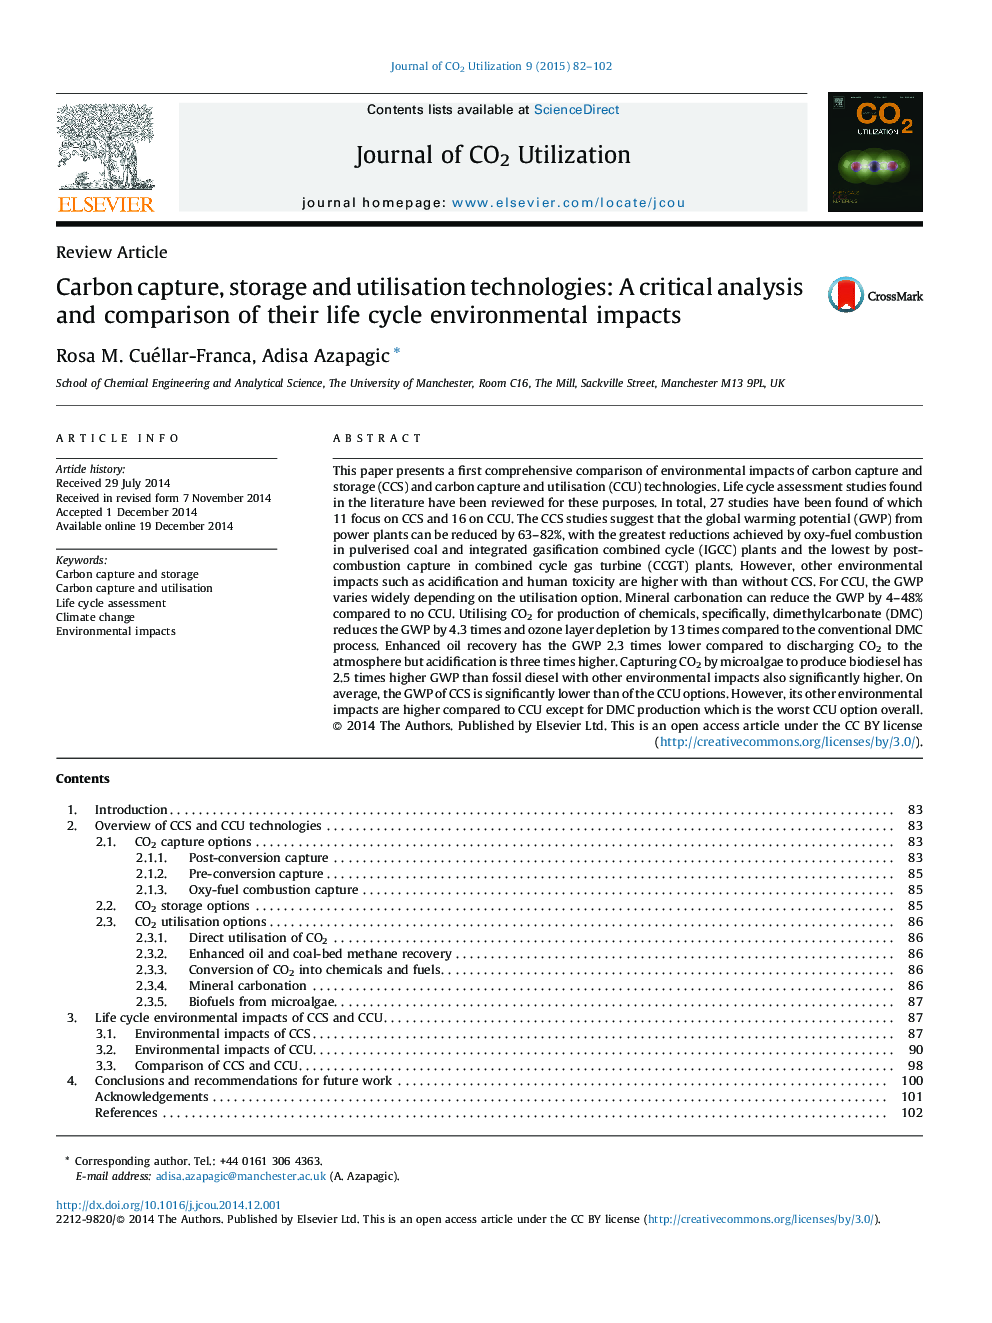 تکنولوژی جذب کربن، ذخیره سازی و بهره برداری: تجزیه و تحلیل بحرانی و مقایسه تاثیرات محیطی آن در محیط زیست 